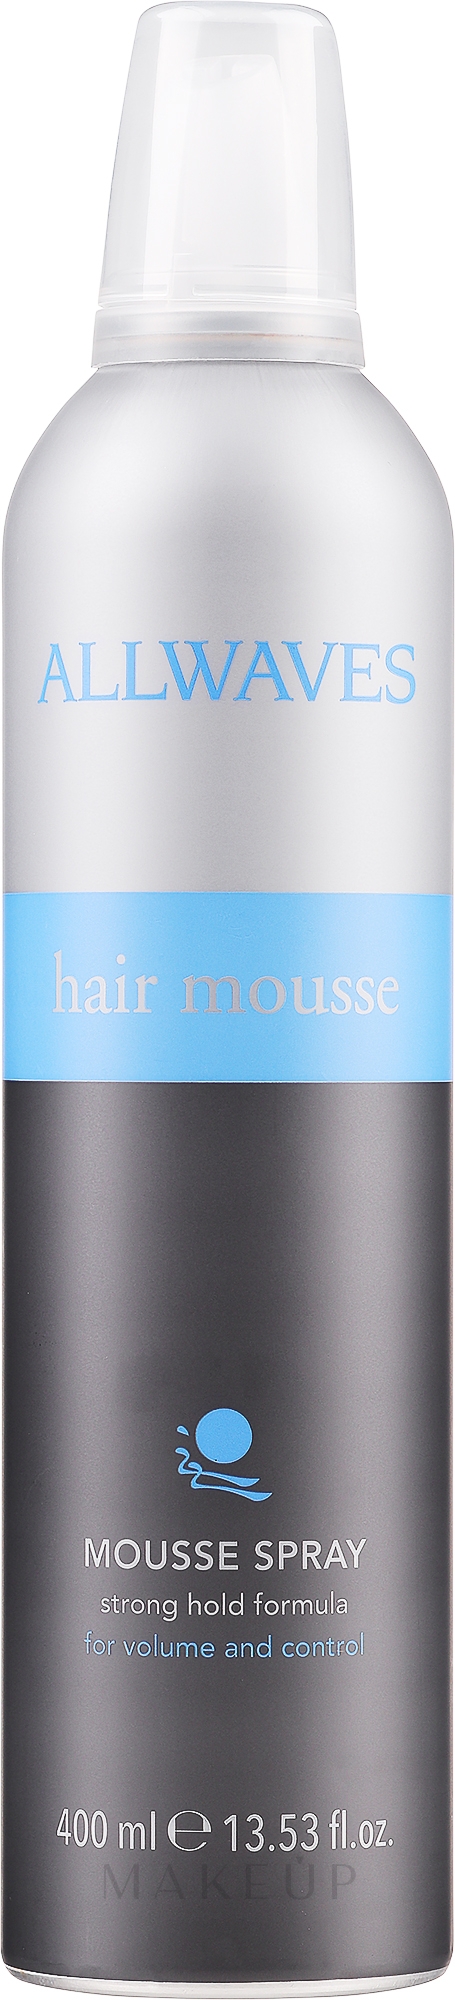 Modellierende Haarmousse Spray für Volumen - Allwaves Hair Mousse Spray — Bild 400 ml